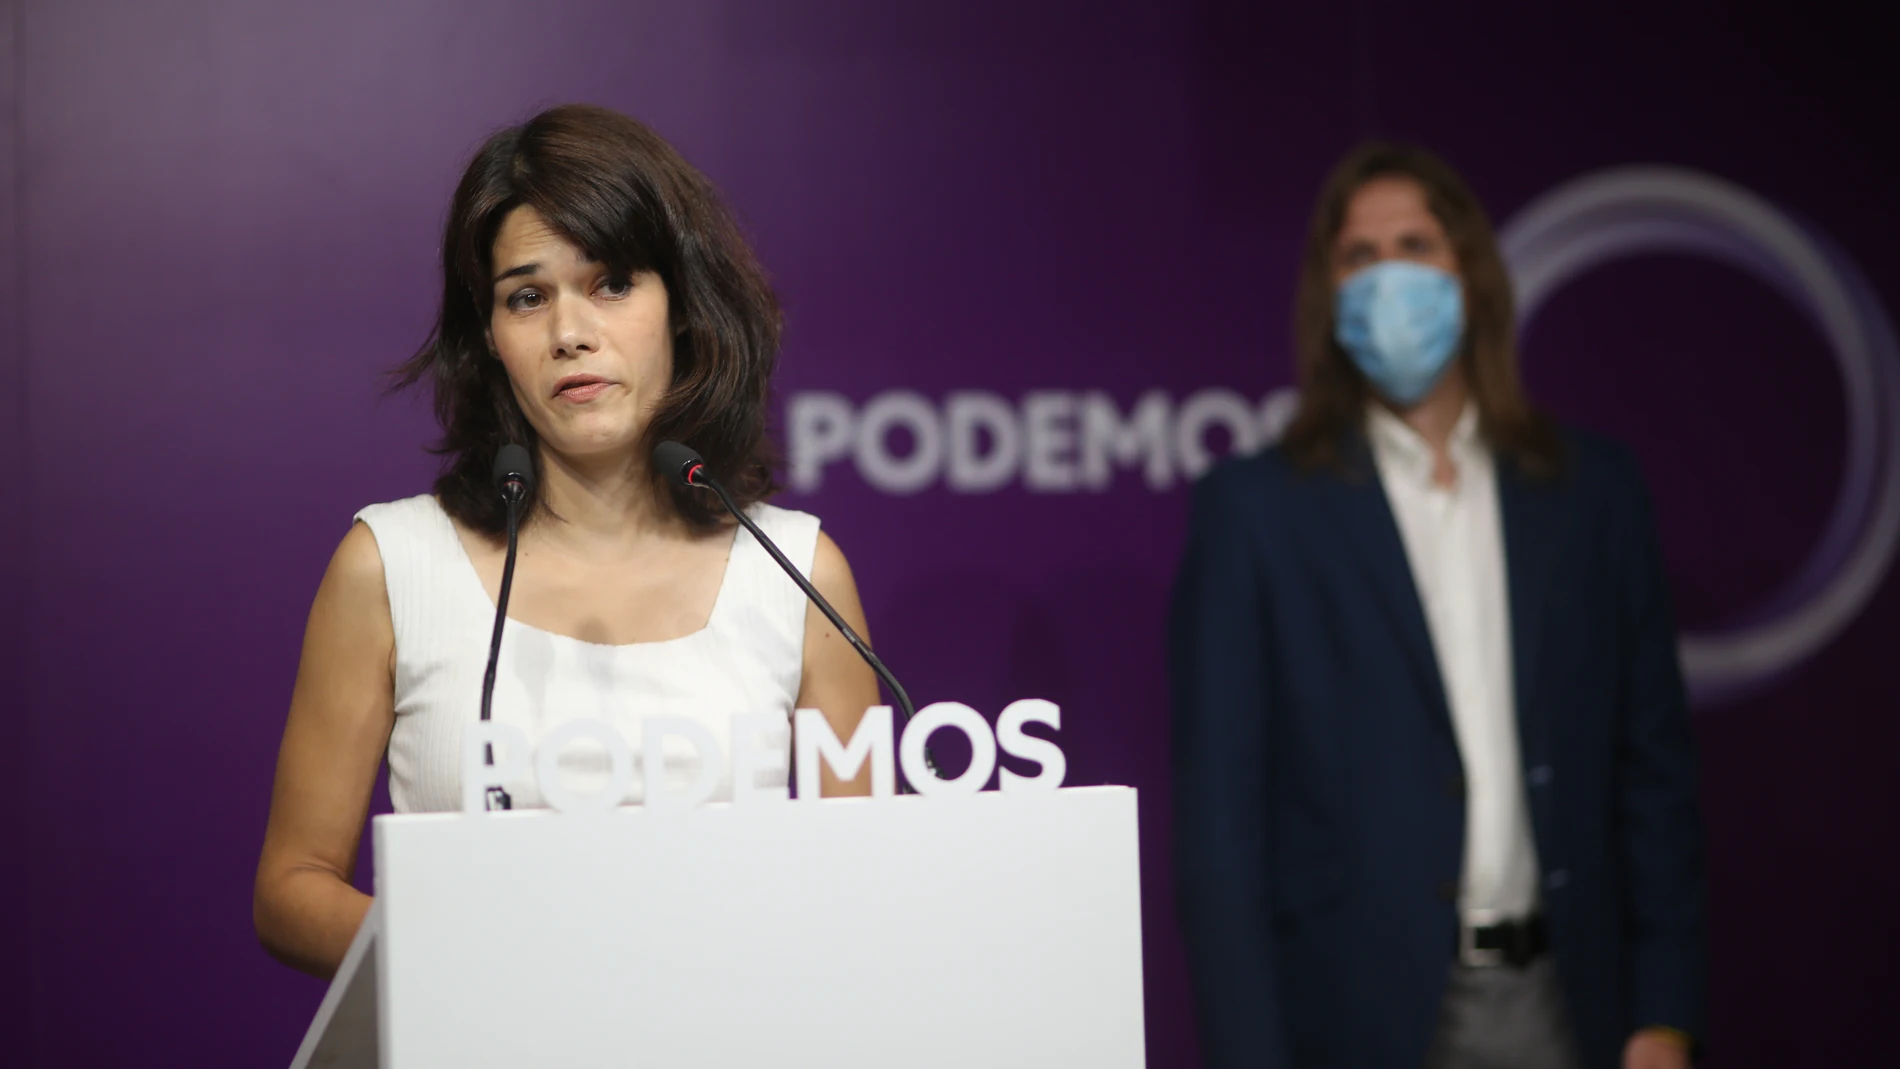 La exportavoz de Podemos en la Asamblea de Madrid Isa Serra interviene en una rueda de prensa tras conocer que el Supremo ratifica su condena a 19 meses de cárcel, a 5 de julio de 2021